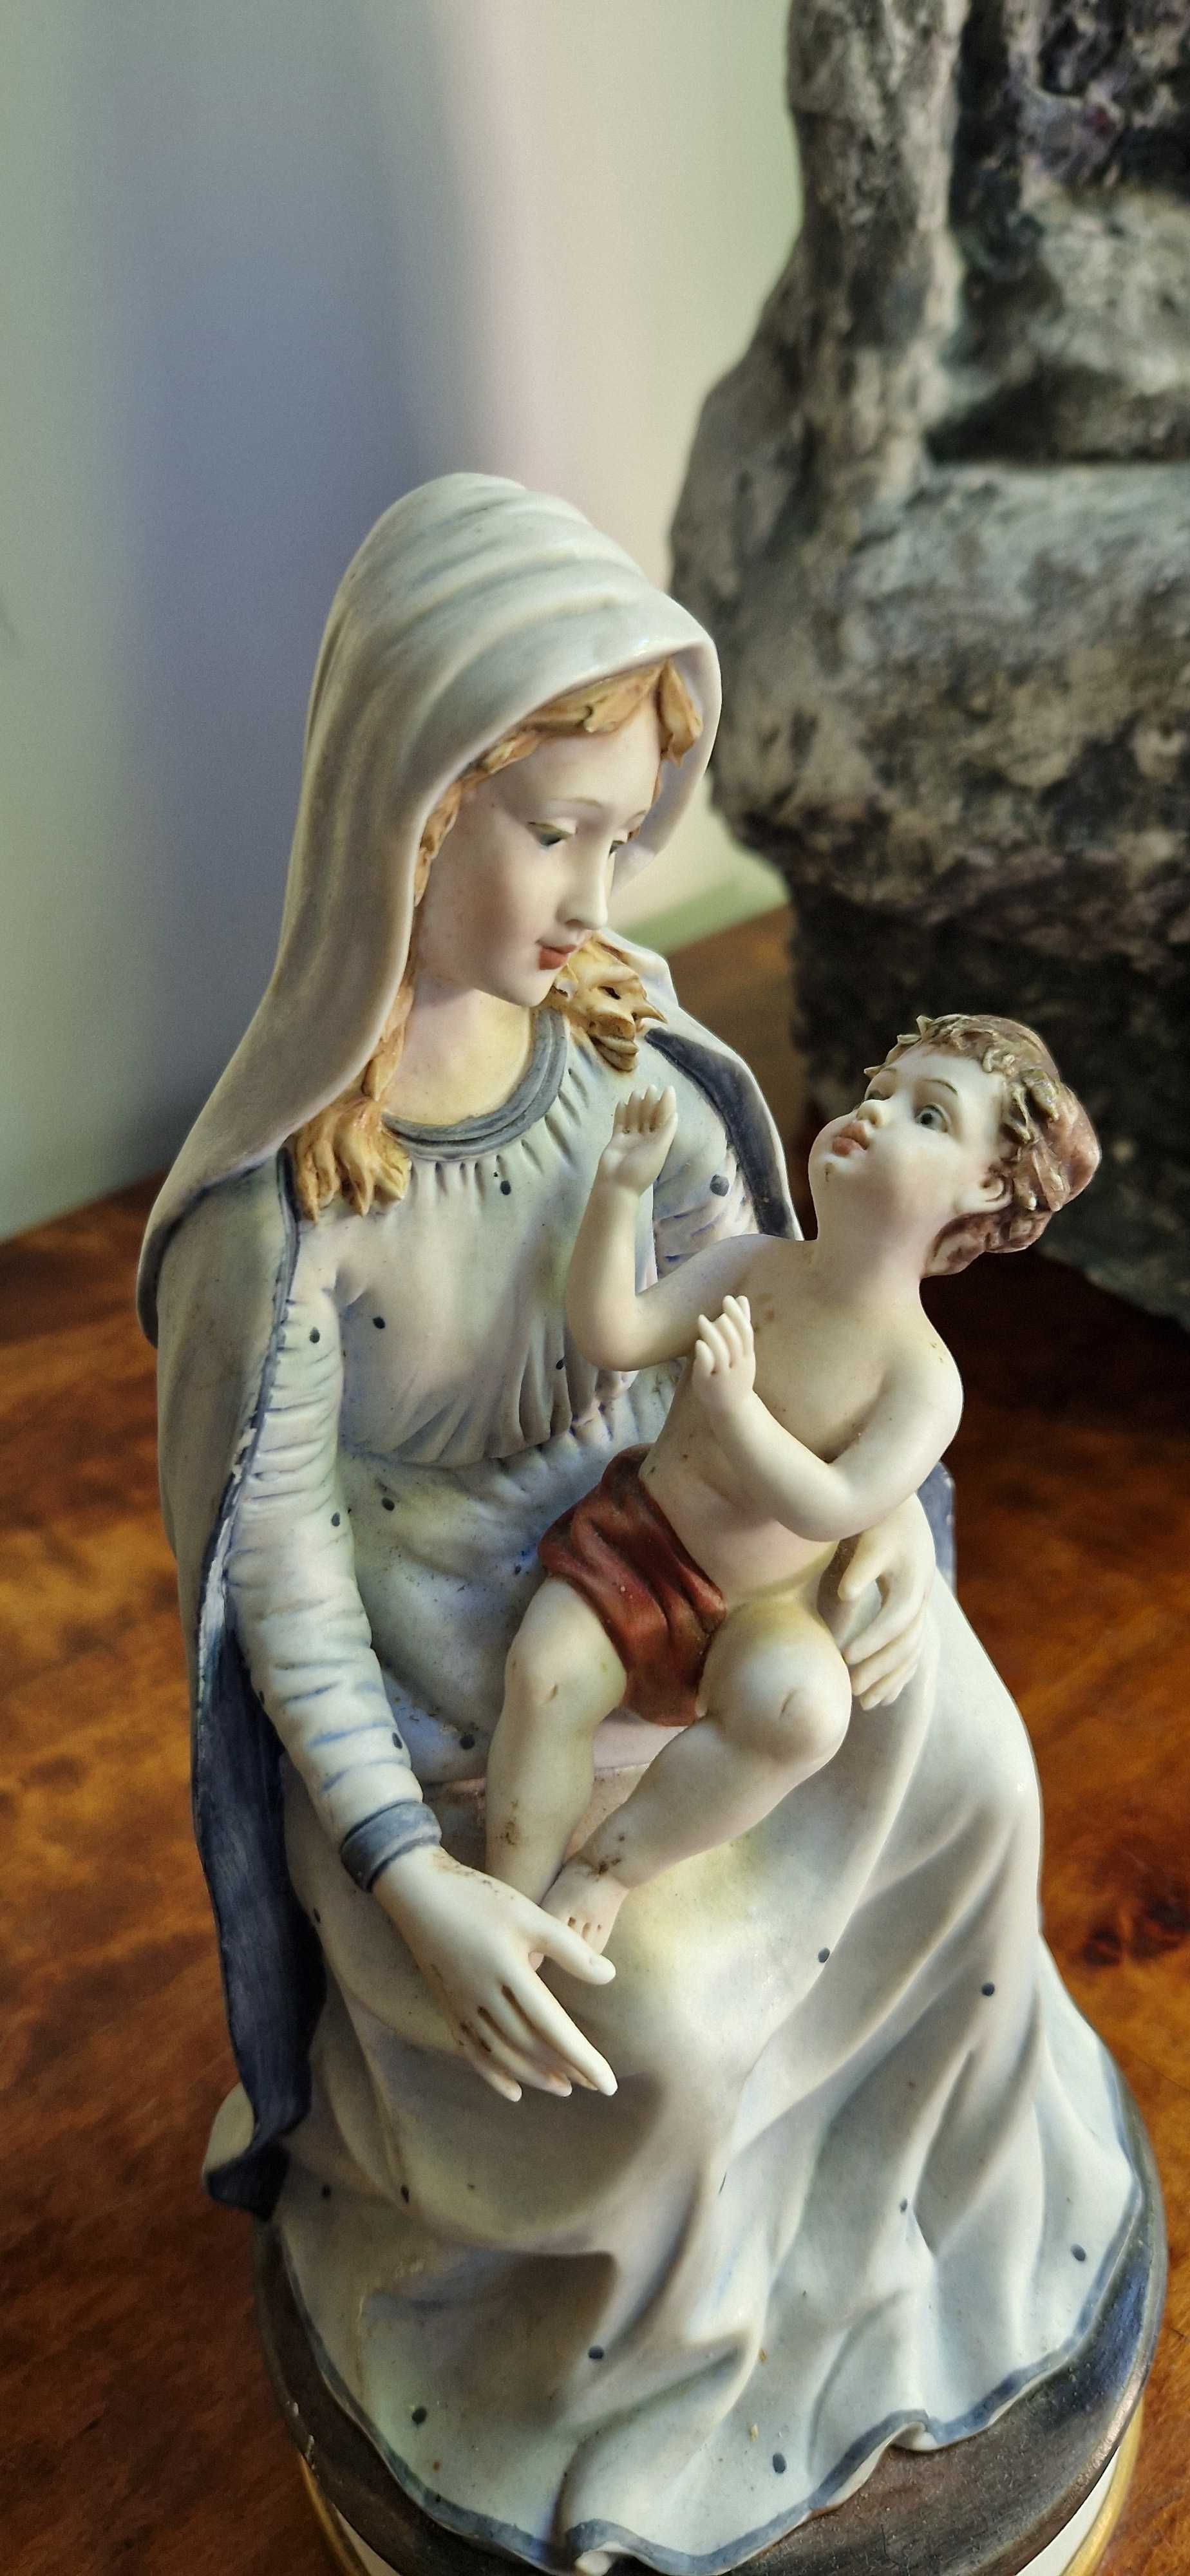 Aukcyjna rzezba Maryja Jezus porcelana biskwit Wlochy Giuseppe Armani